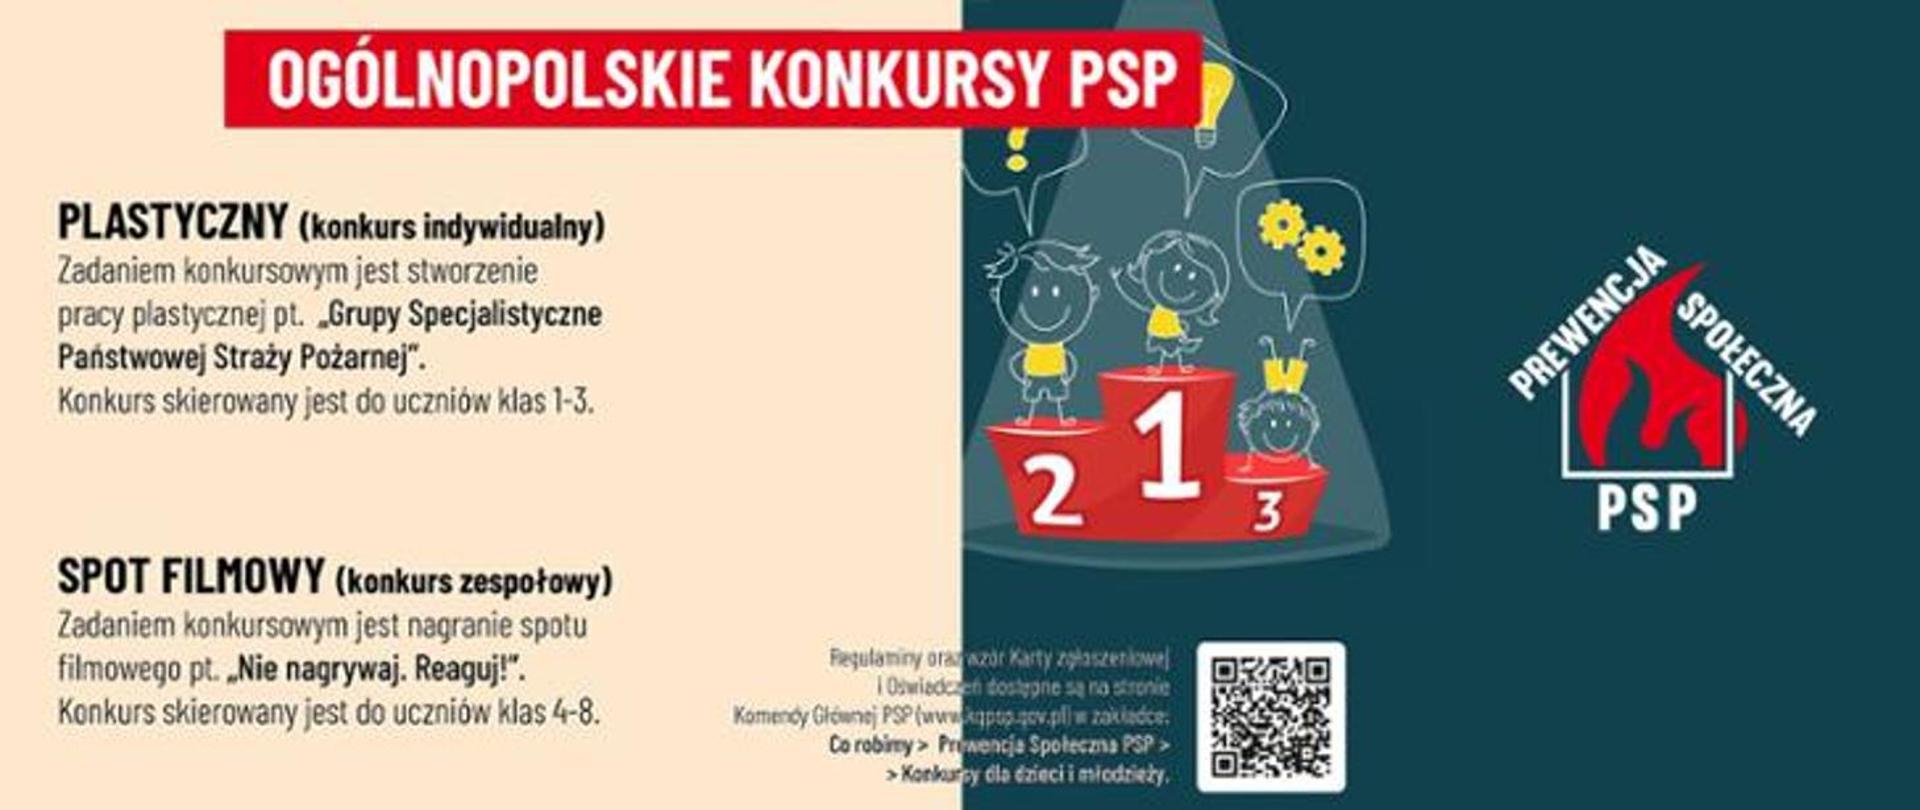 Ogólnopolskie konkursy PSP - plakat ogłaszający konkursy dla dzieci i młodzieży ze szkół podstawowych